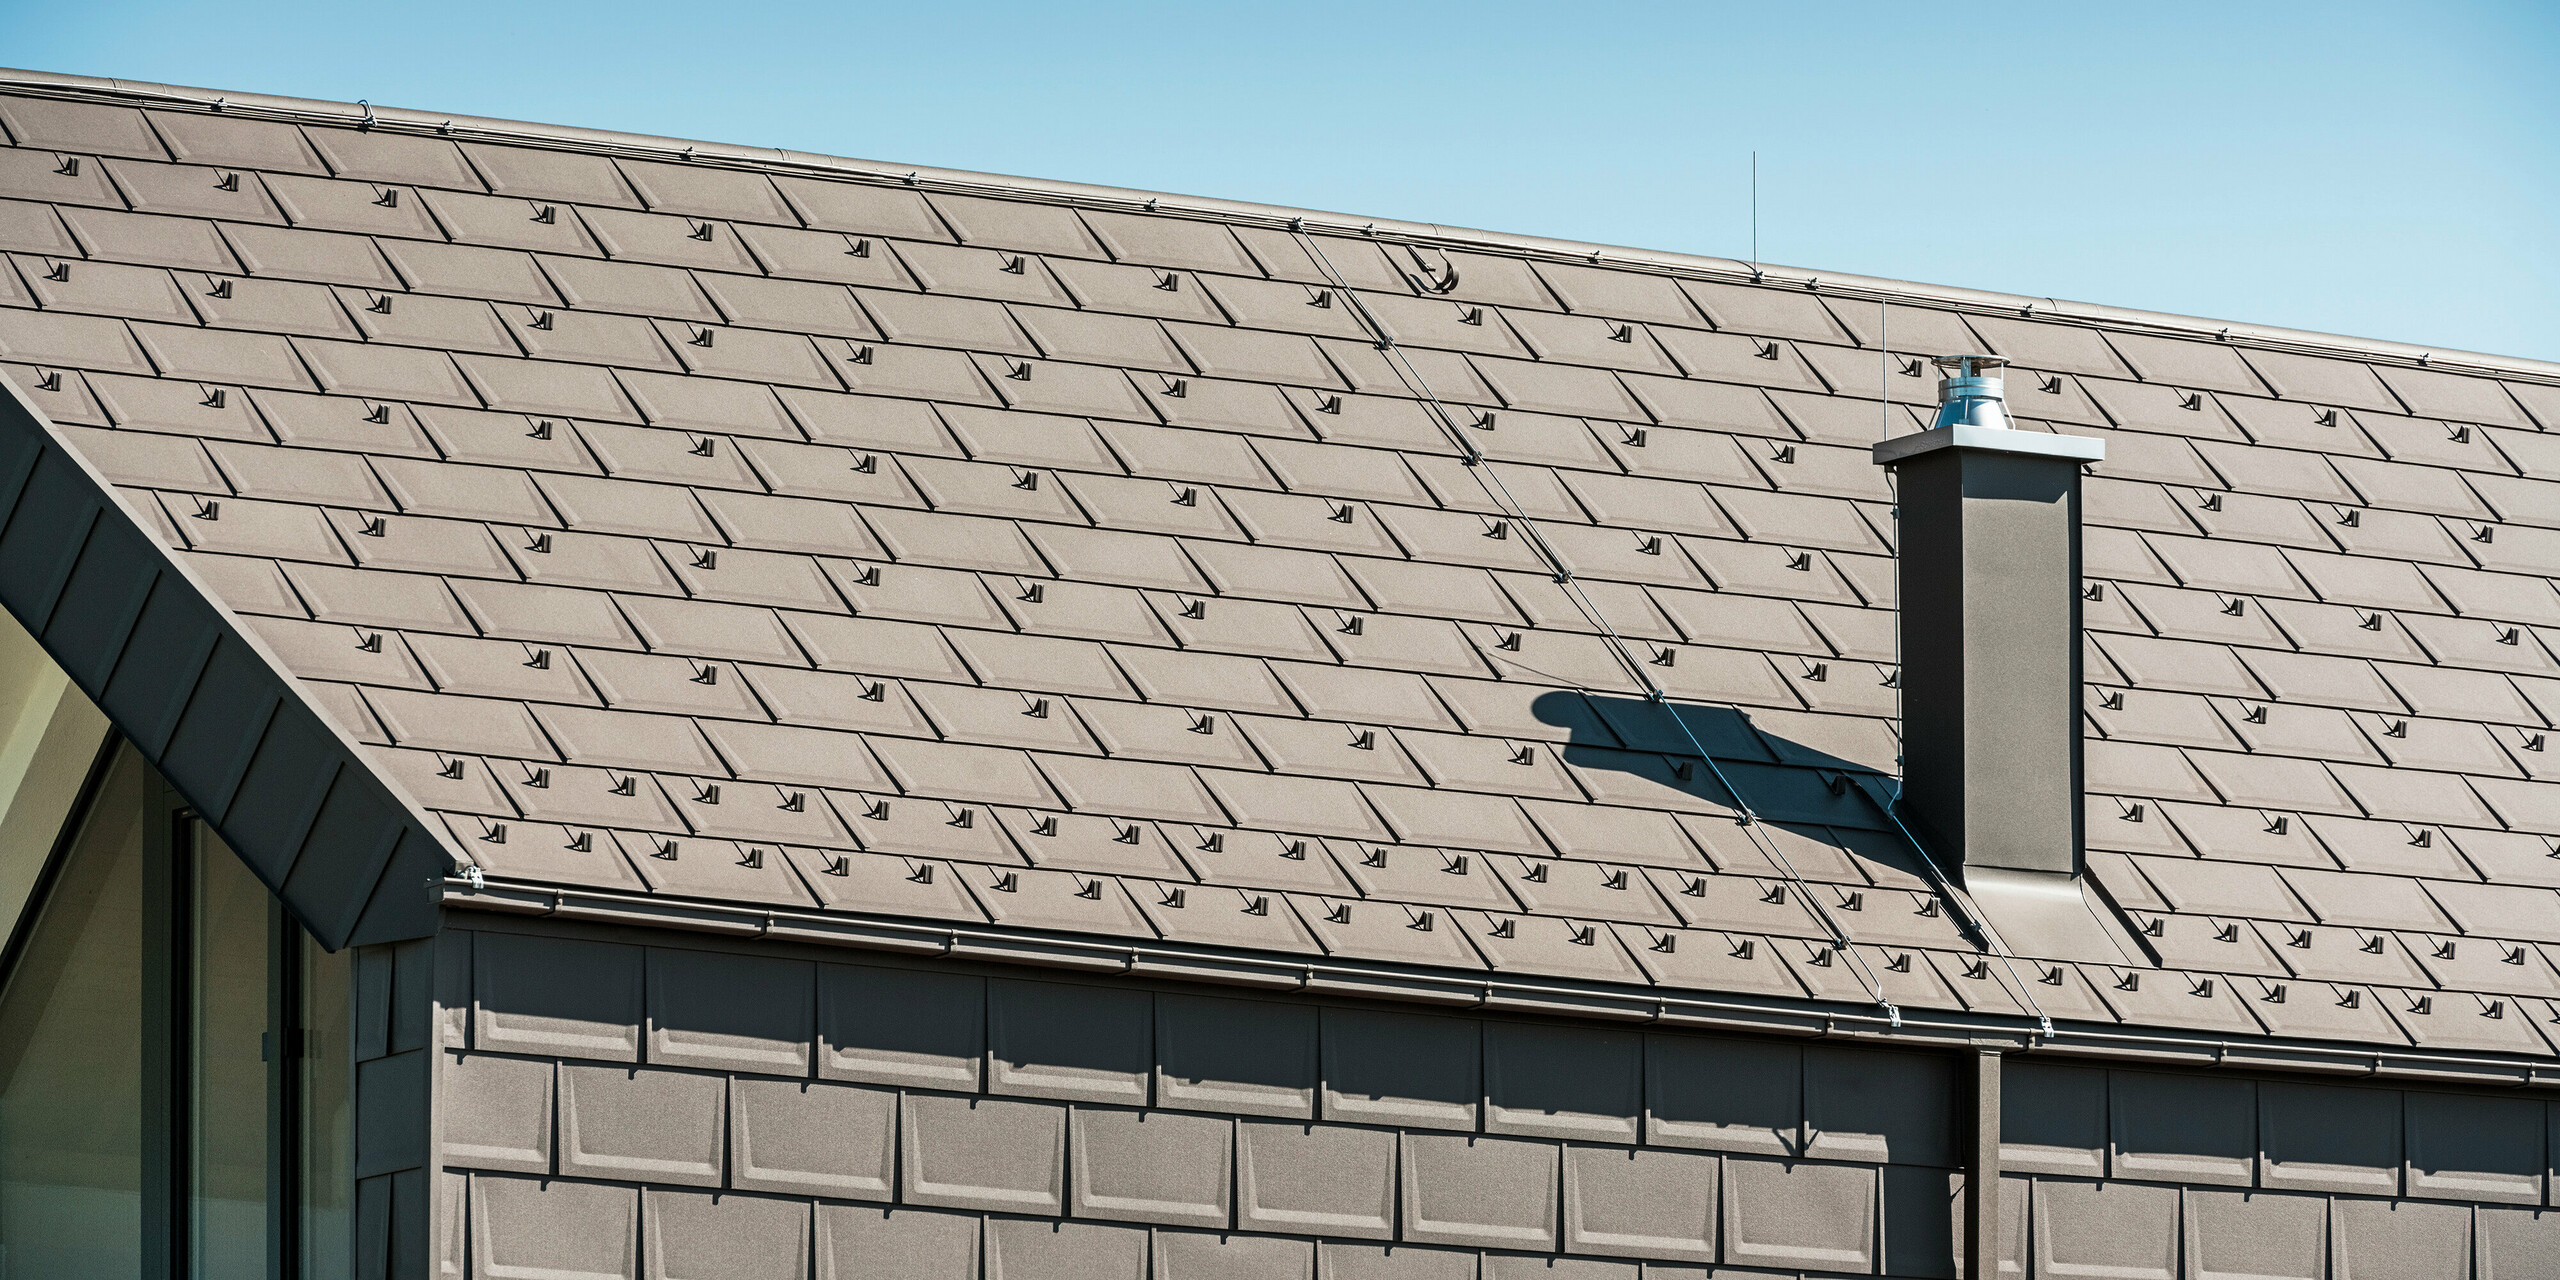 Boční pohled na rodinný dům v rakouském Neukirchenu s precizně položenými střešními panely PREFA R.16 v P.10 hnědé na střeše a fasádě. Na střešní konstrukci je vidět kvalitní řemeslné zpracování a dlouhodobá kvalita výrobků PREFA. Výrazný komín a moderní odvodnění střechy v podobě krabicového žlabu a čtvercového potrubí doplňují střešní systém a zdůrazňují jasné linie a promyšlený design budovy.